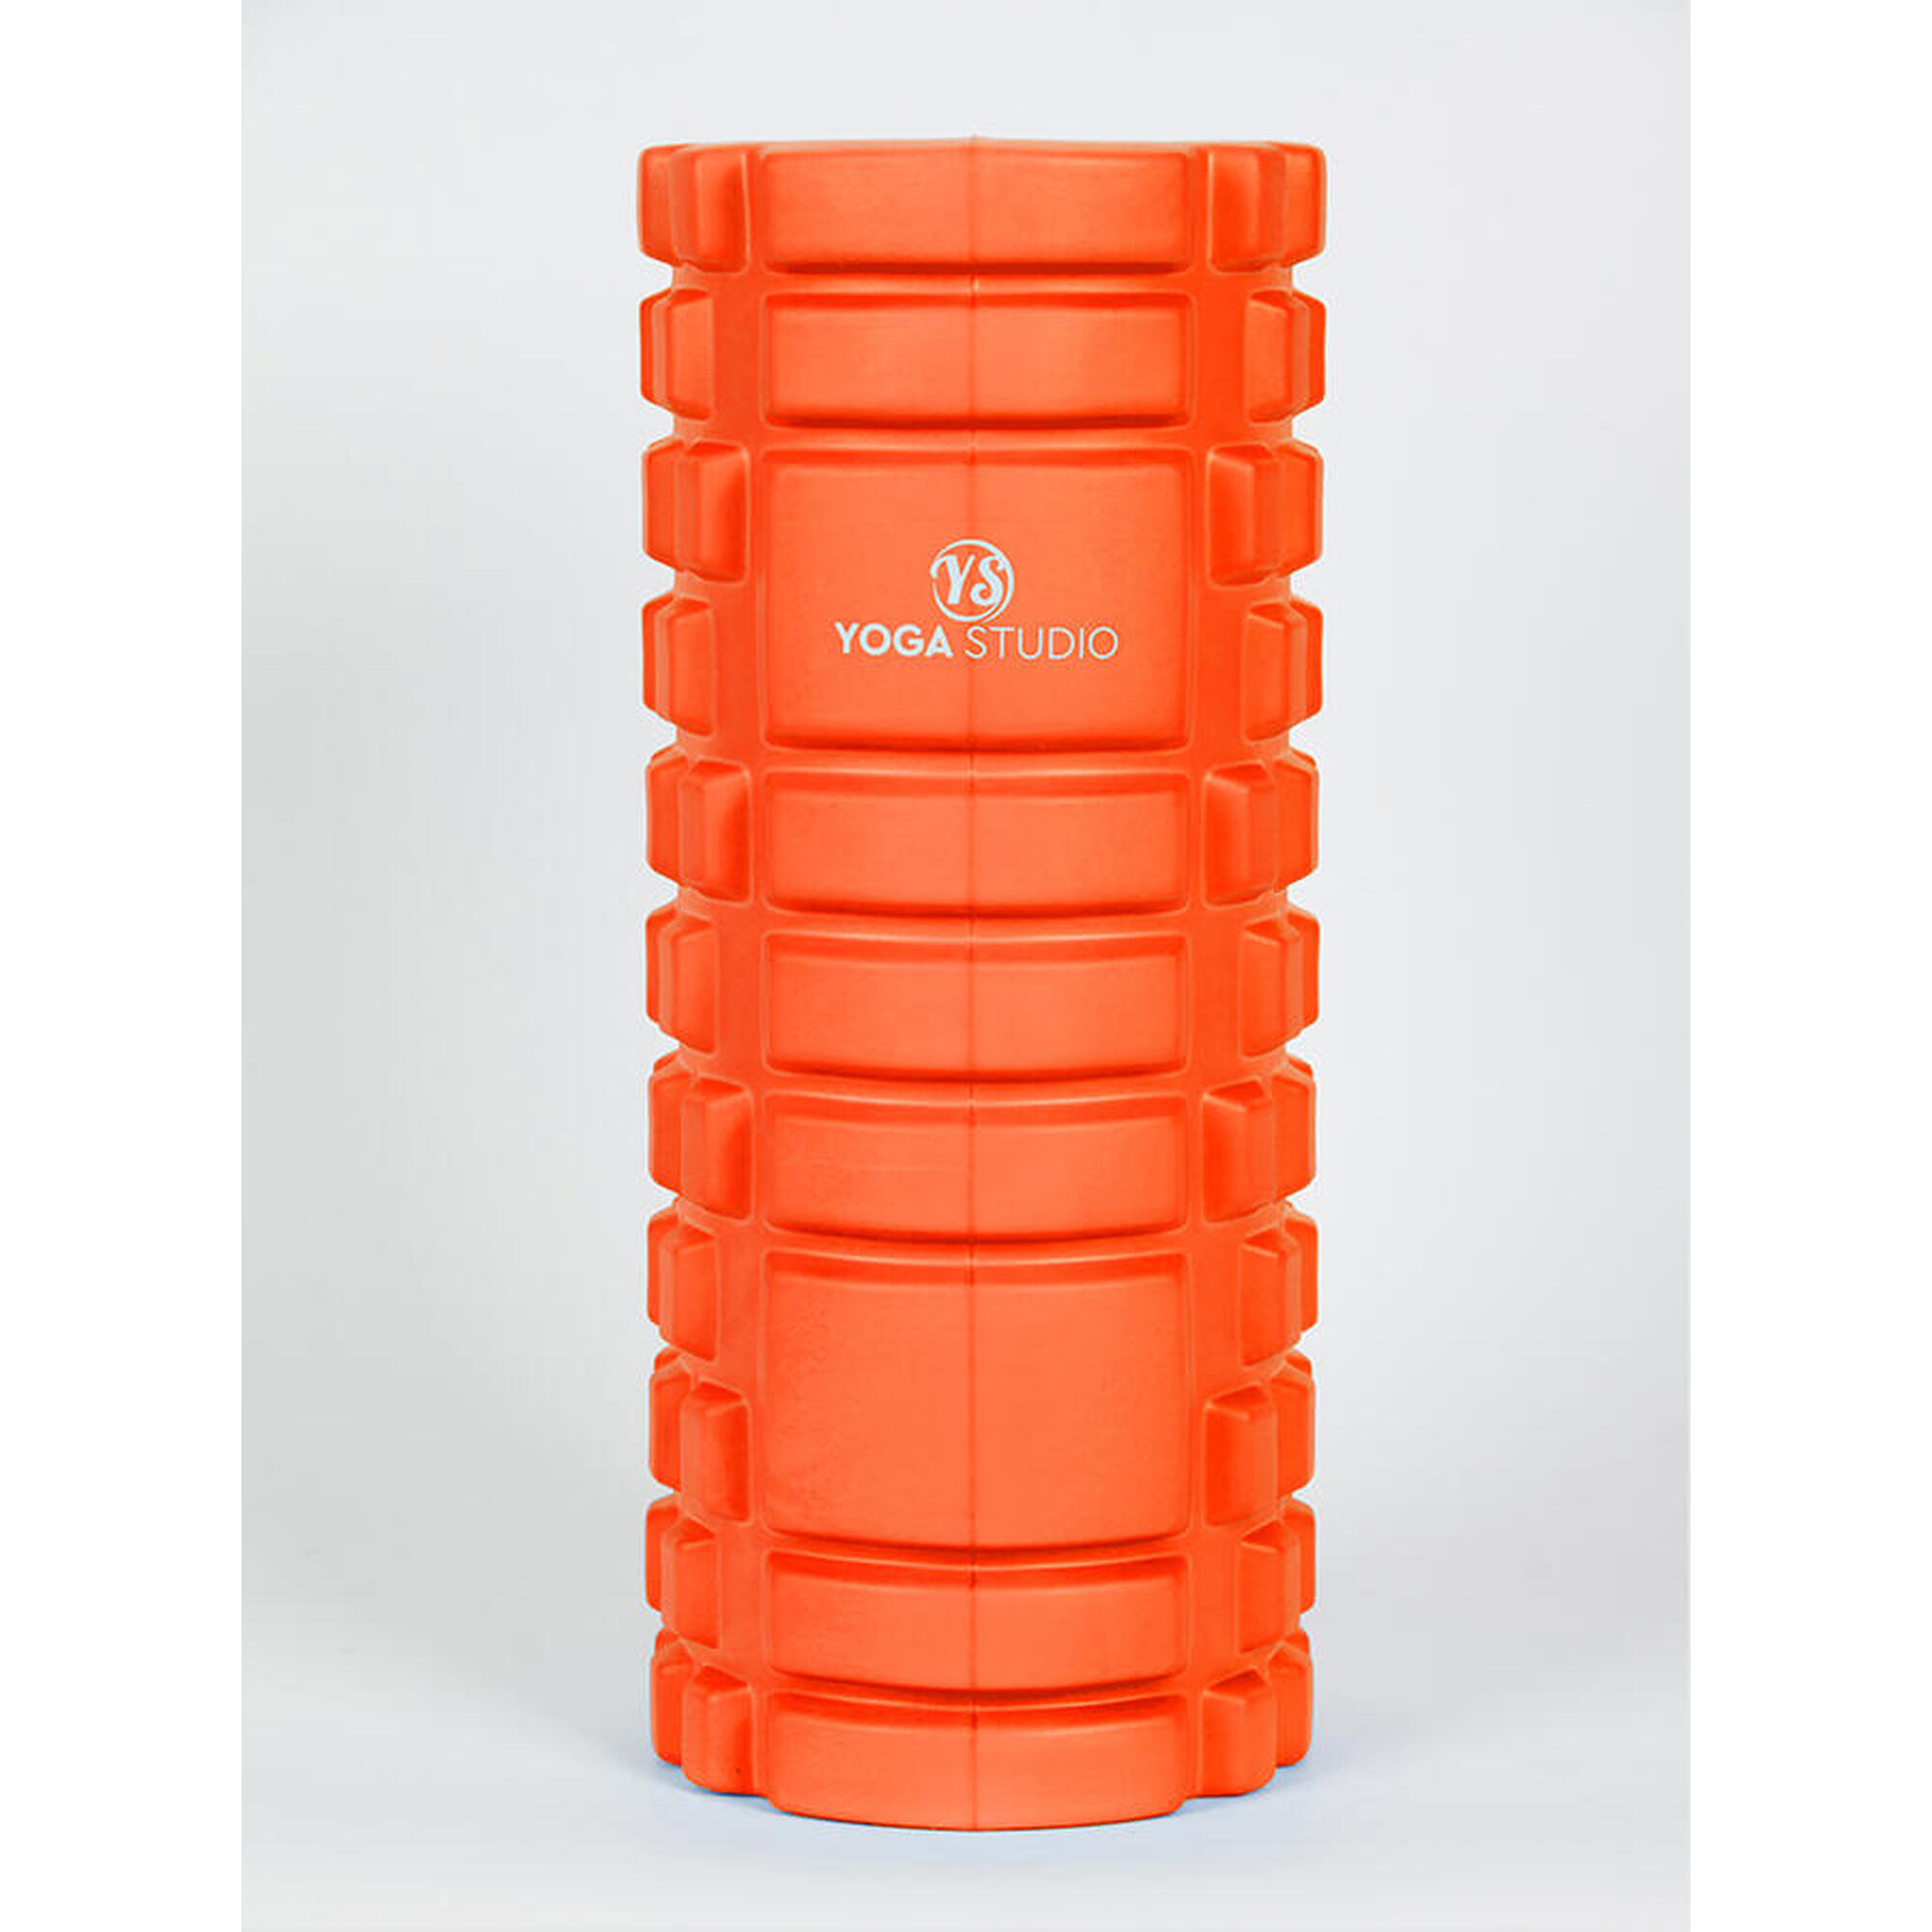 Yoga Studio SMR Trigger Point Grid Foam Massage Roller - Orange 1/5